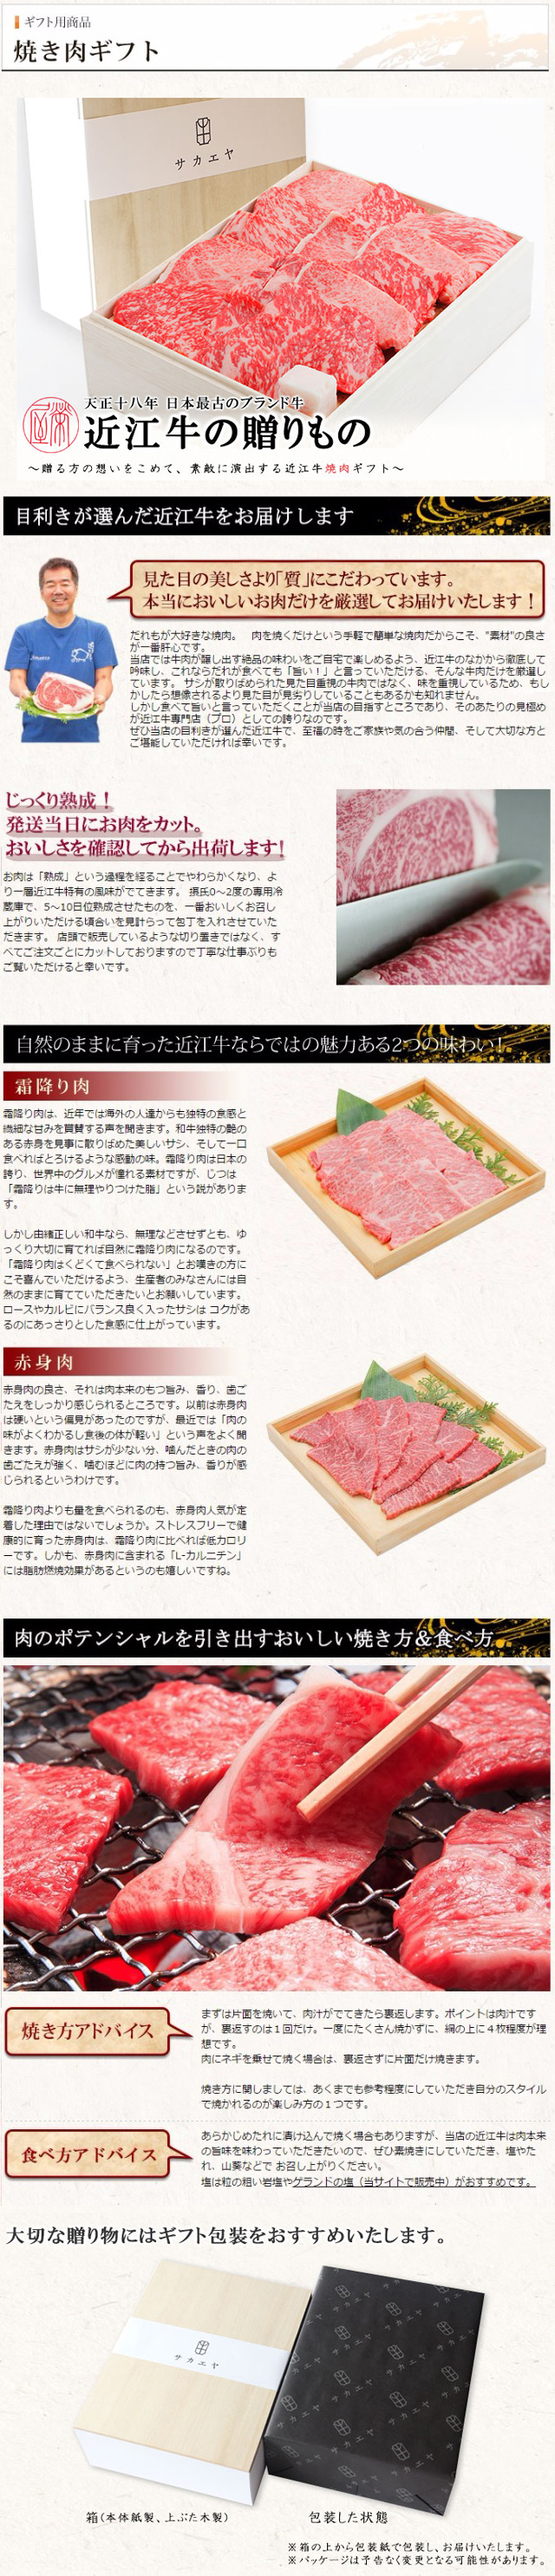 近江牛焼肉ギフト 牛肉通販 サカエヤonline Store